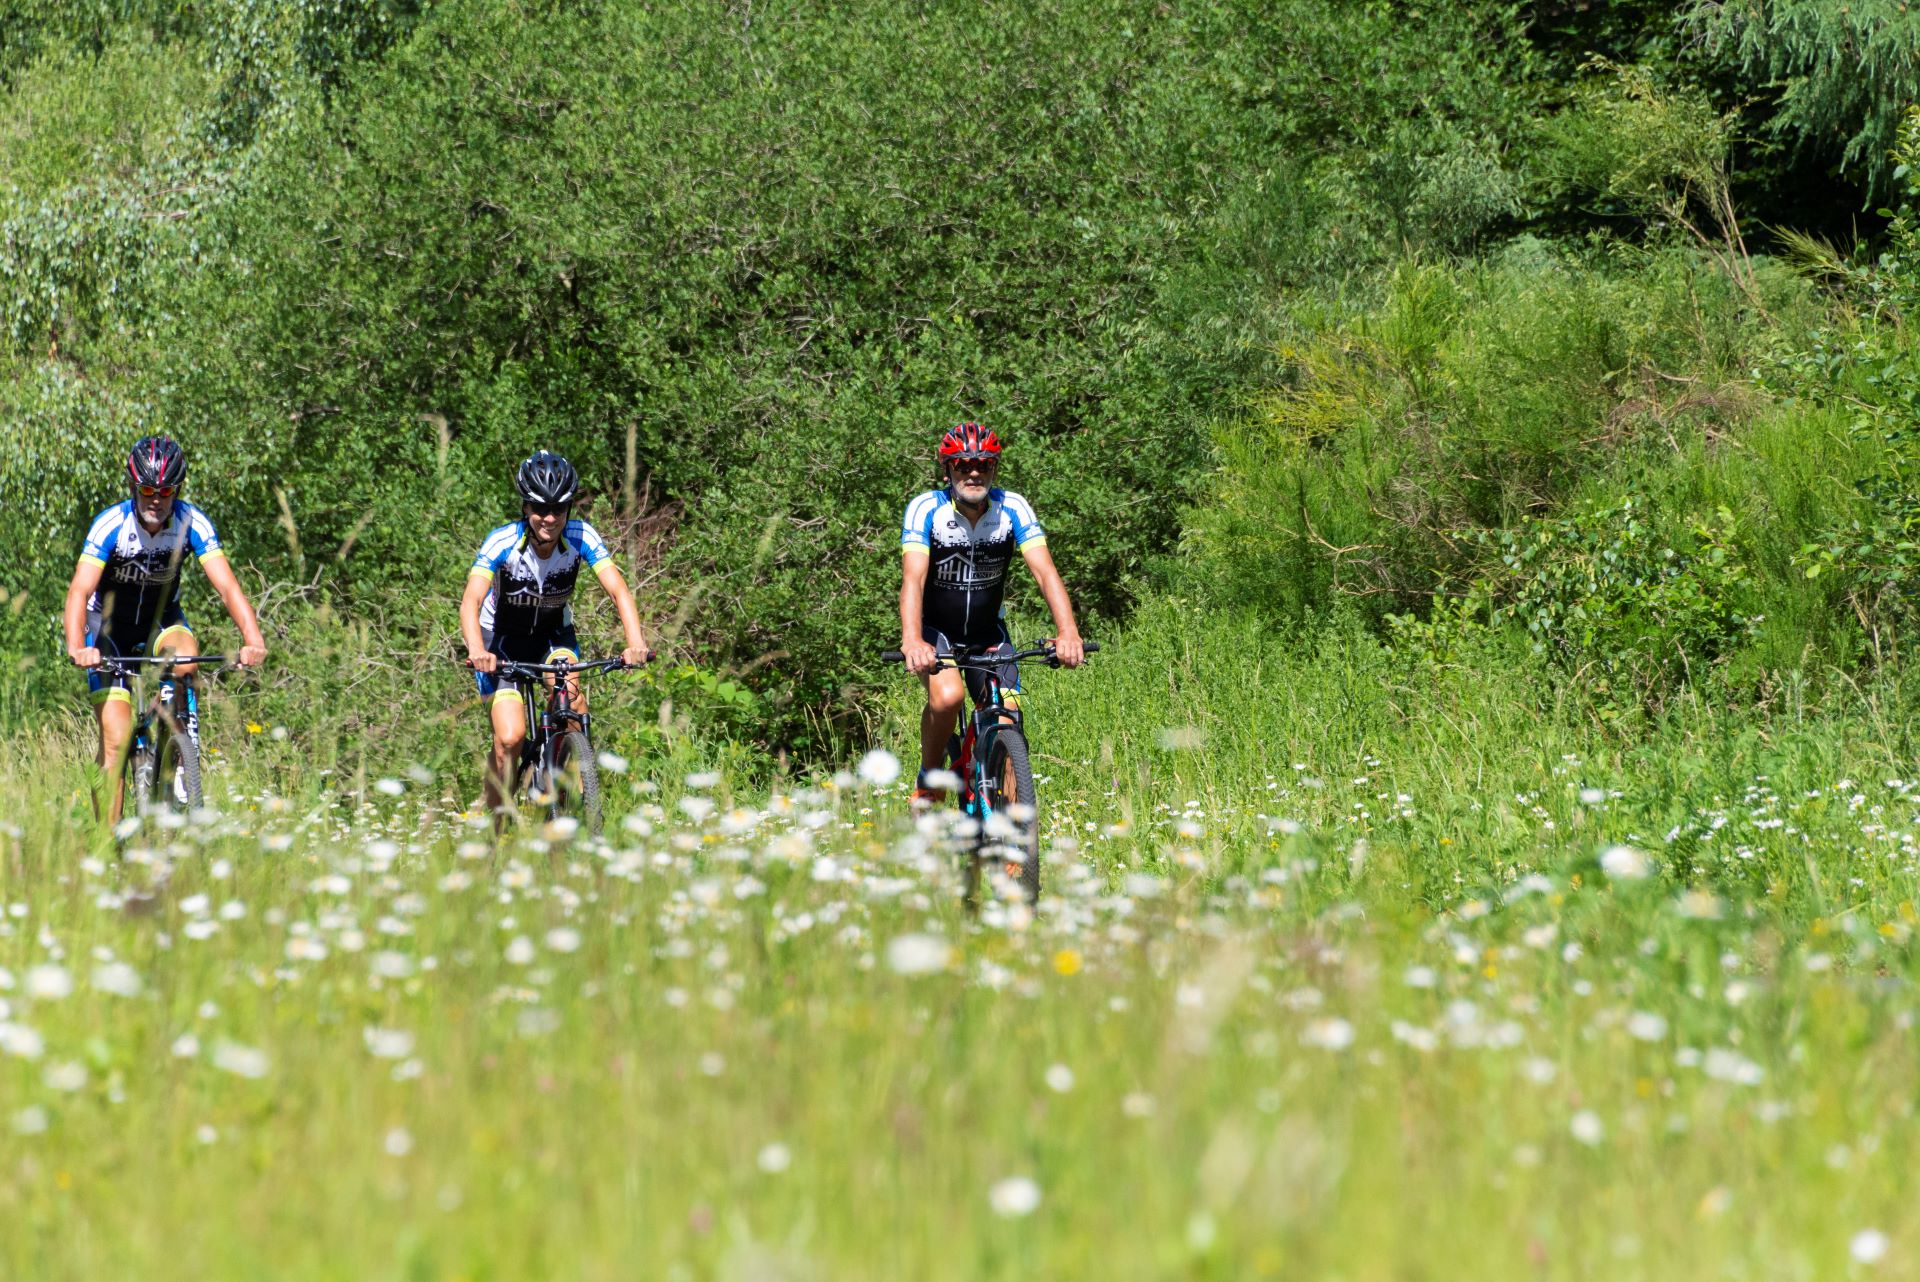 Drei Mountainbiker sind auf einem Radweg zu sehen, der durch ein grünes Feld voller weißer Wildblumen führt.